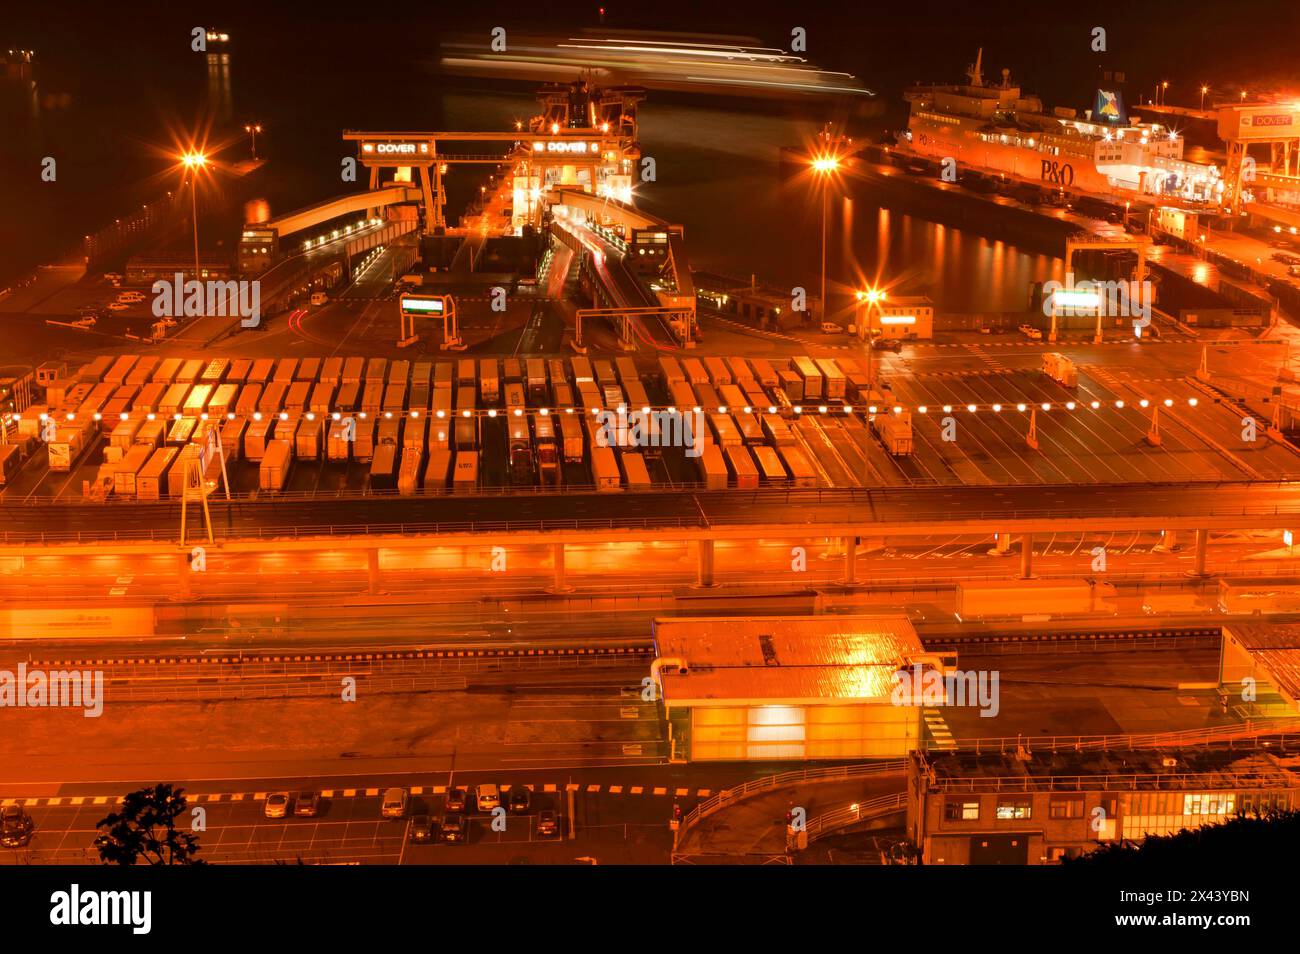 Nächtliches Bild von einem Blick auf den Cross-Channel-Fährhafen im Hafen von Dover mit Auto Ferries, die an den östlichen Docks beladen werden Stockfoto